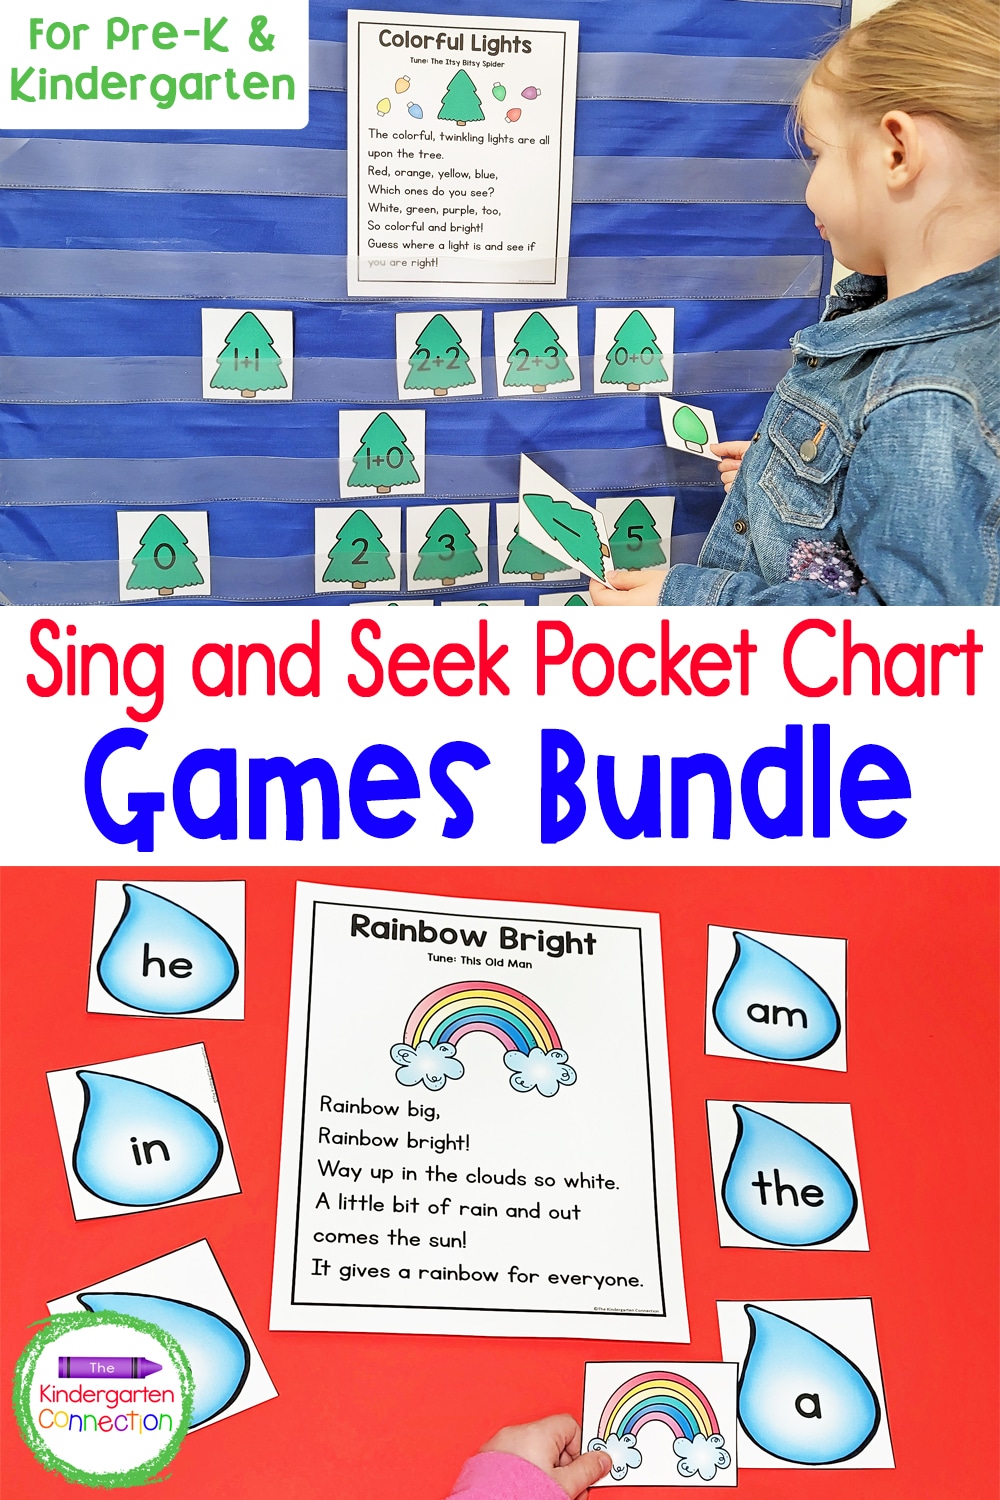 Sing and Seek Pocket Chart Games Bundle for Pre-K & Kindergarten